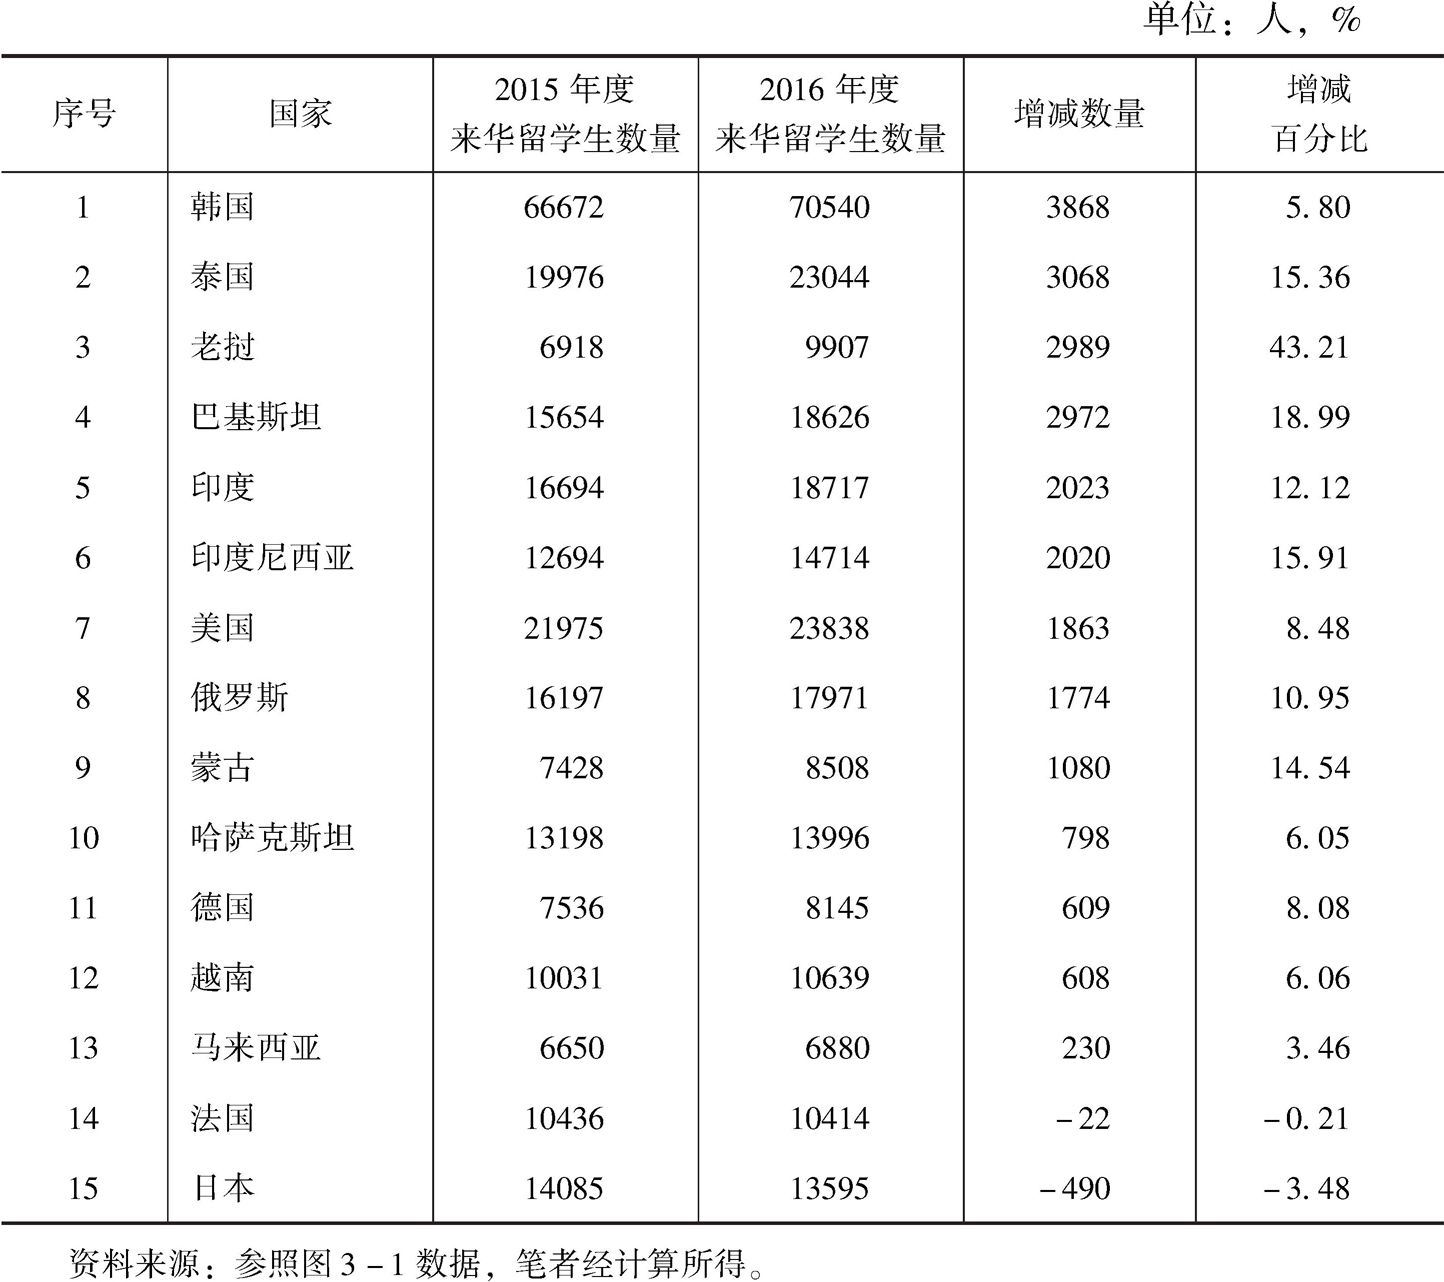 表3-9 2015～2016年前15位生源国来华留学生人数及其增减情况